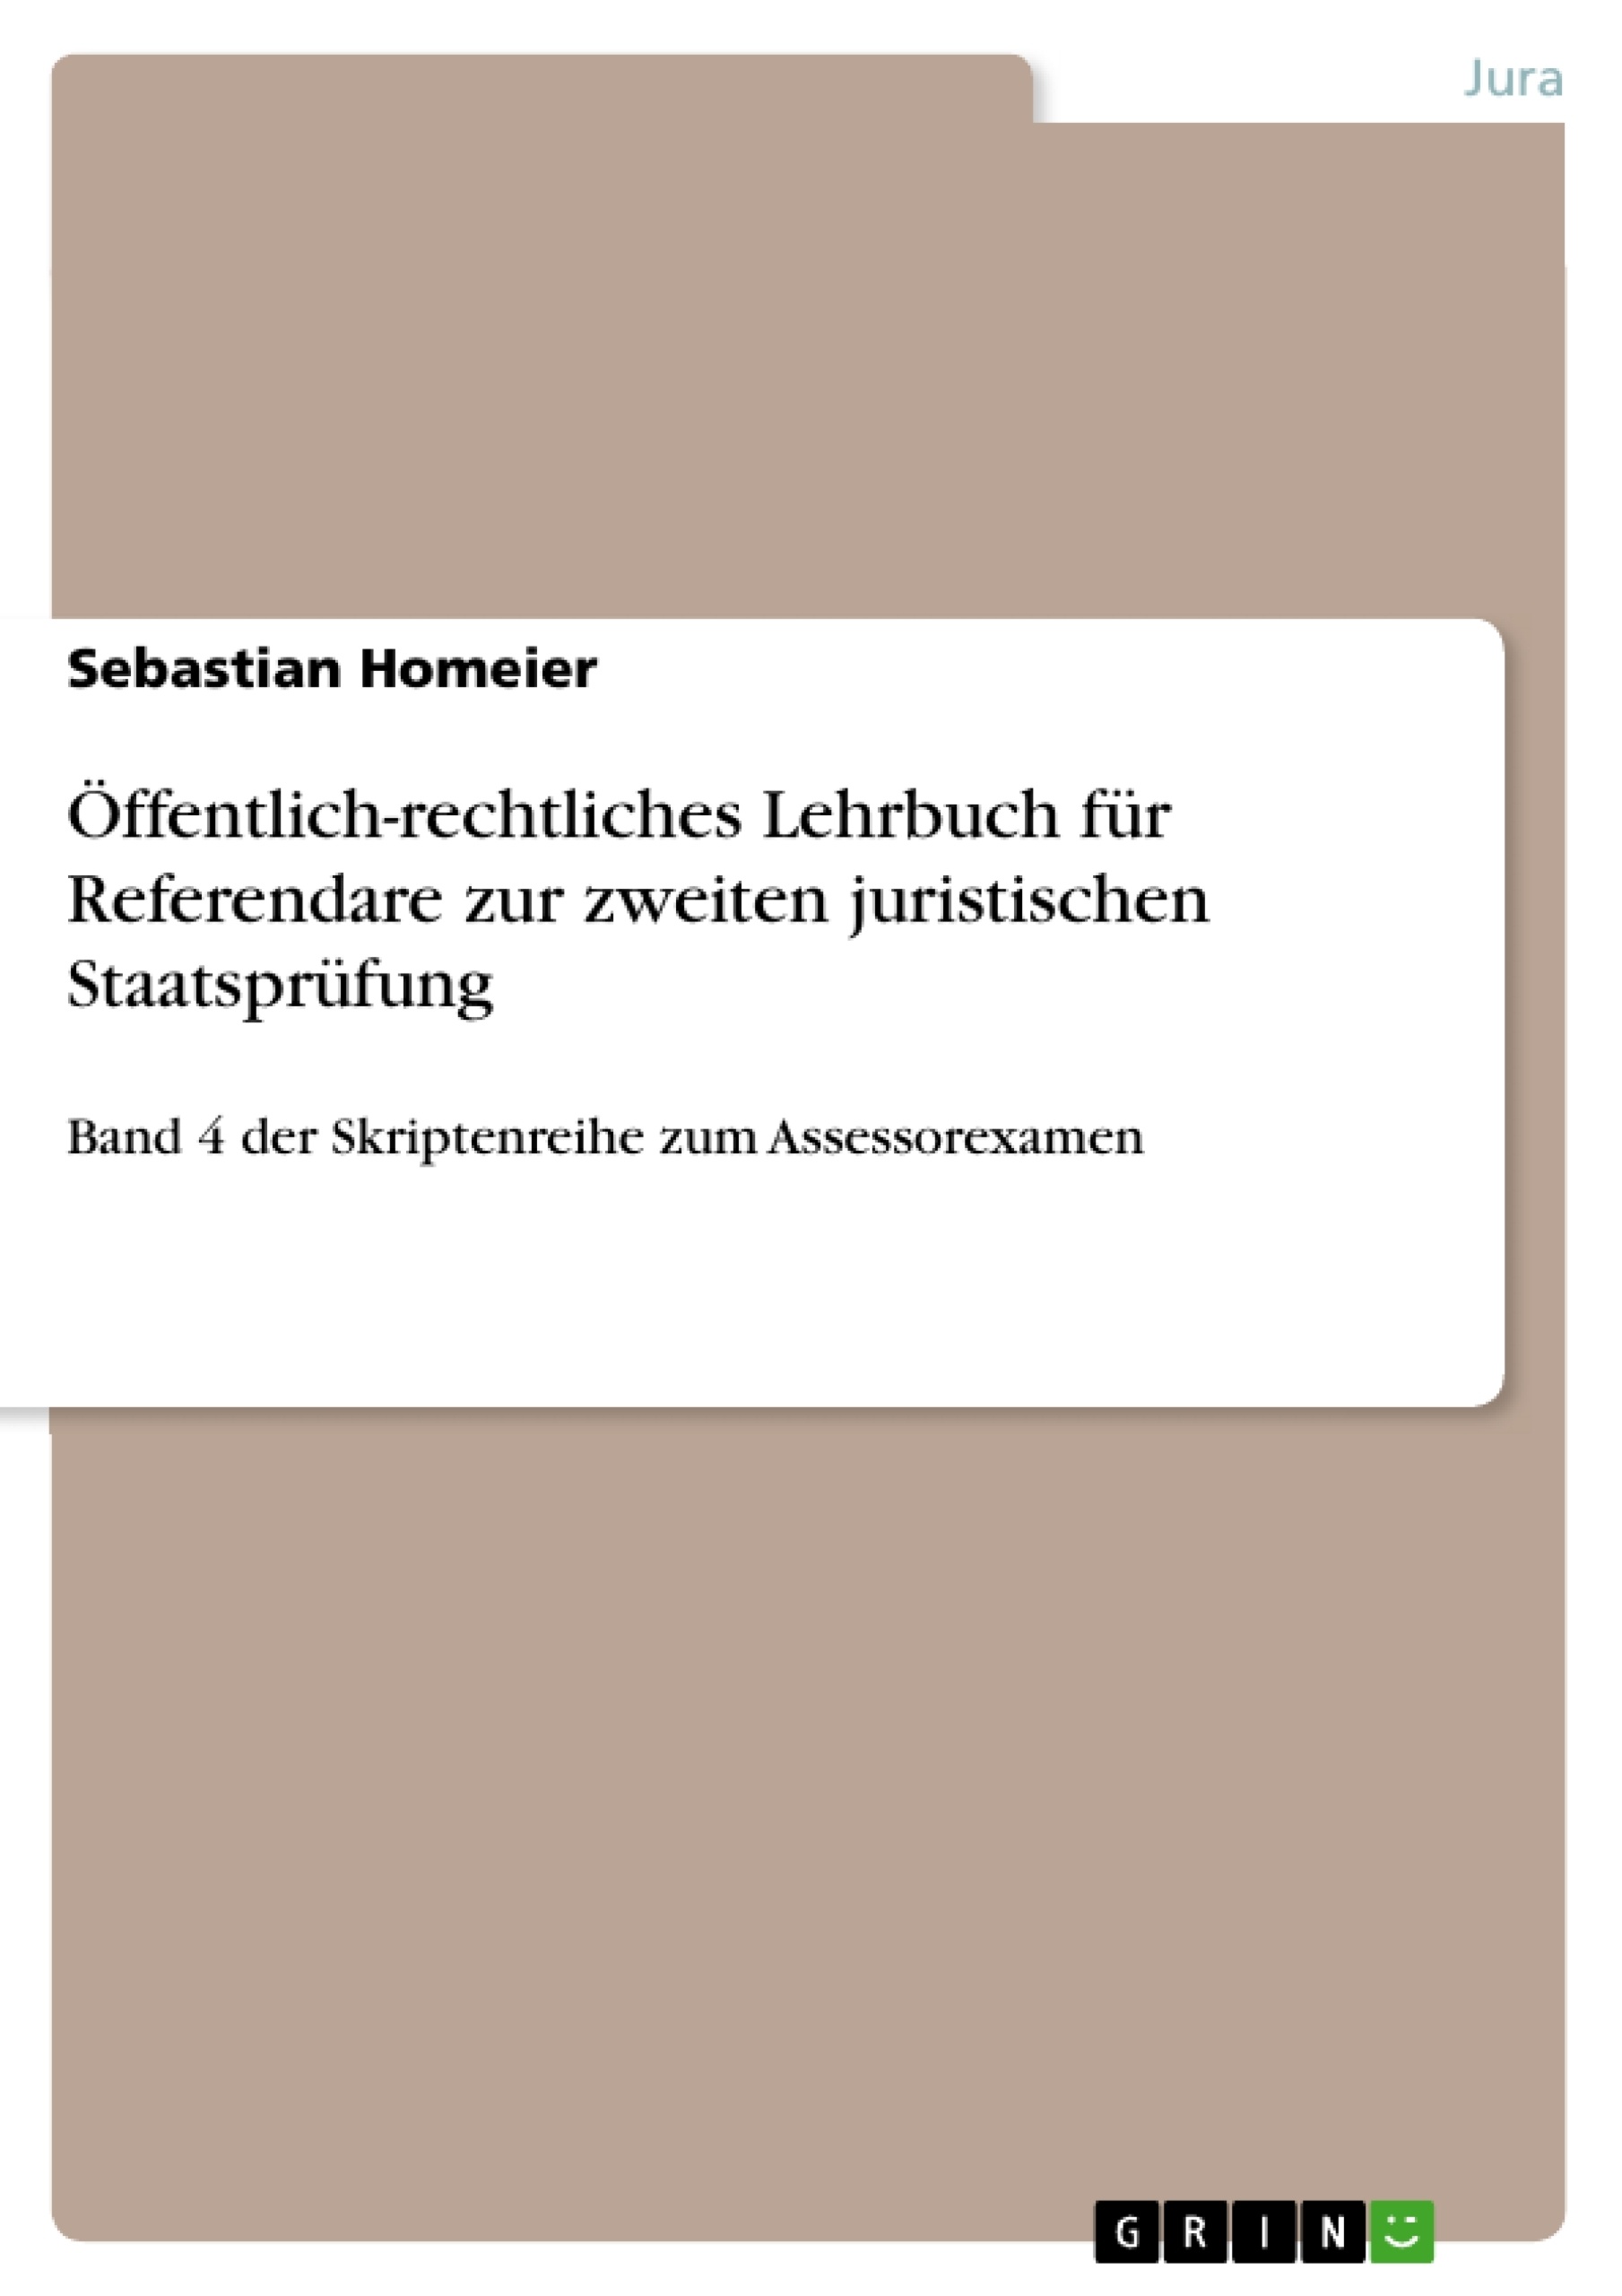 Título: Öffentlich-rechtliches Lehrbuch für Referendare zur zweiten juristischen Staatsprüfung